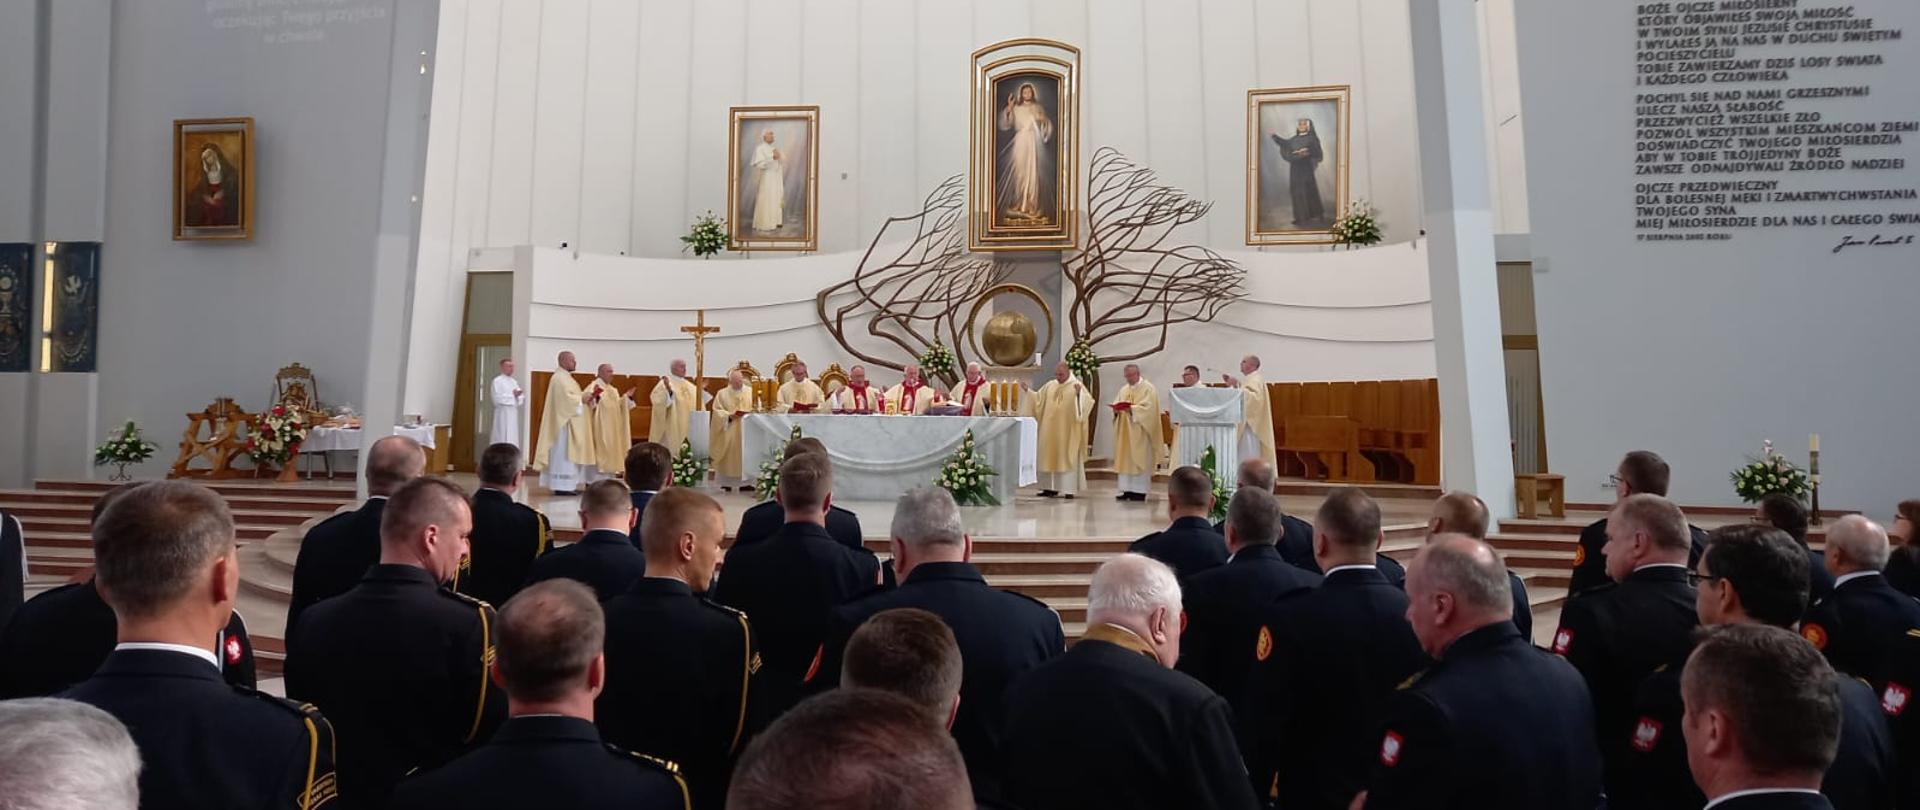 Strażacy podczas uroczystej mszy św.
KP PSP Myślenice
XXI Małopolska Pielgrzymka Strażaków